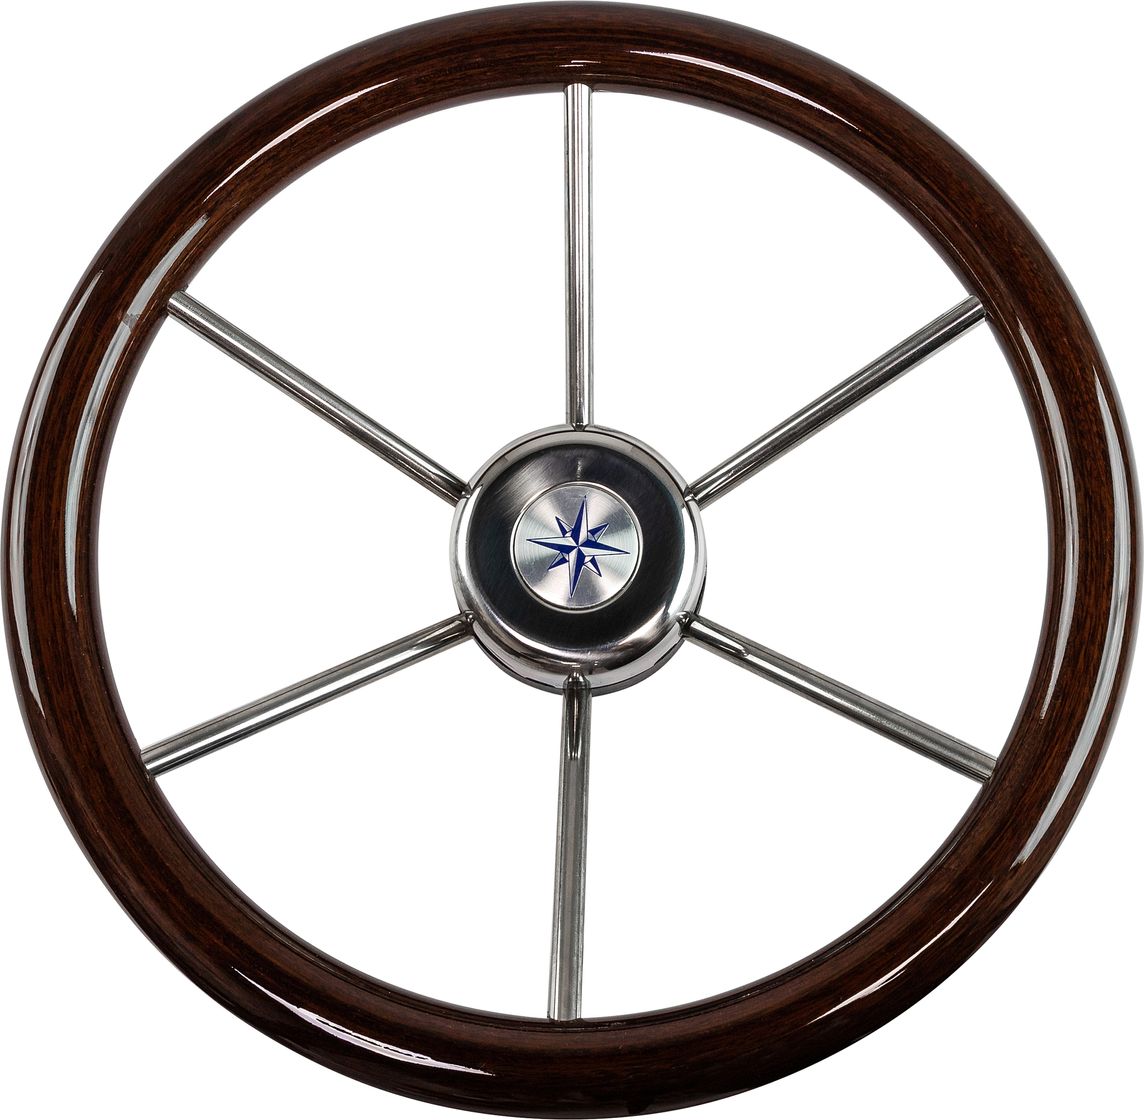 Рулевое колесо LEADER WOOD деревянный обод серебряные спицы д. 360 мм VN7360-33